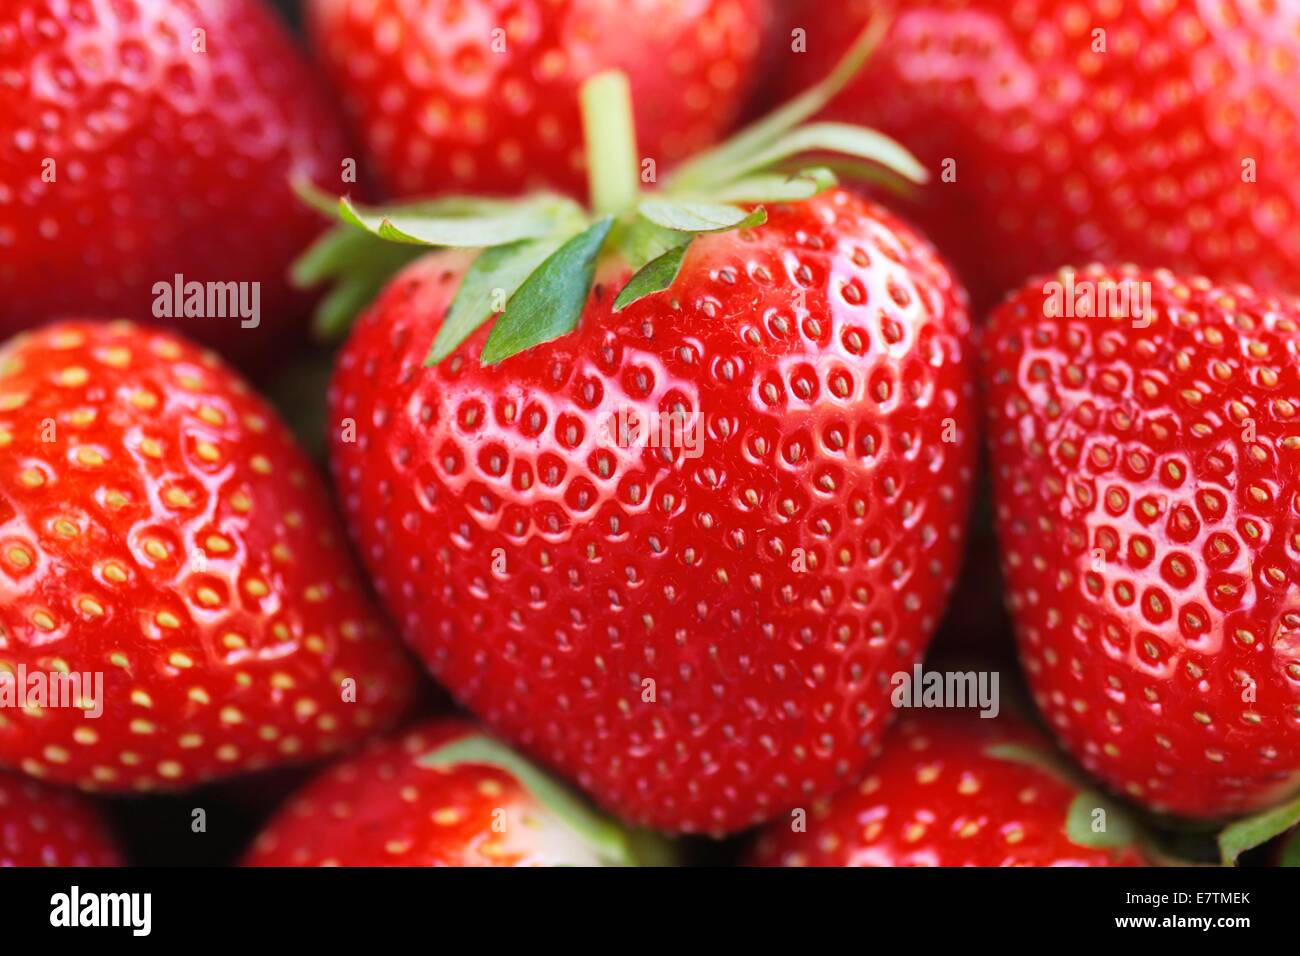 Strawberries (Fragaria x ananassa). Stock Photo